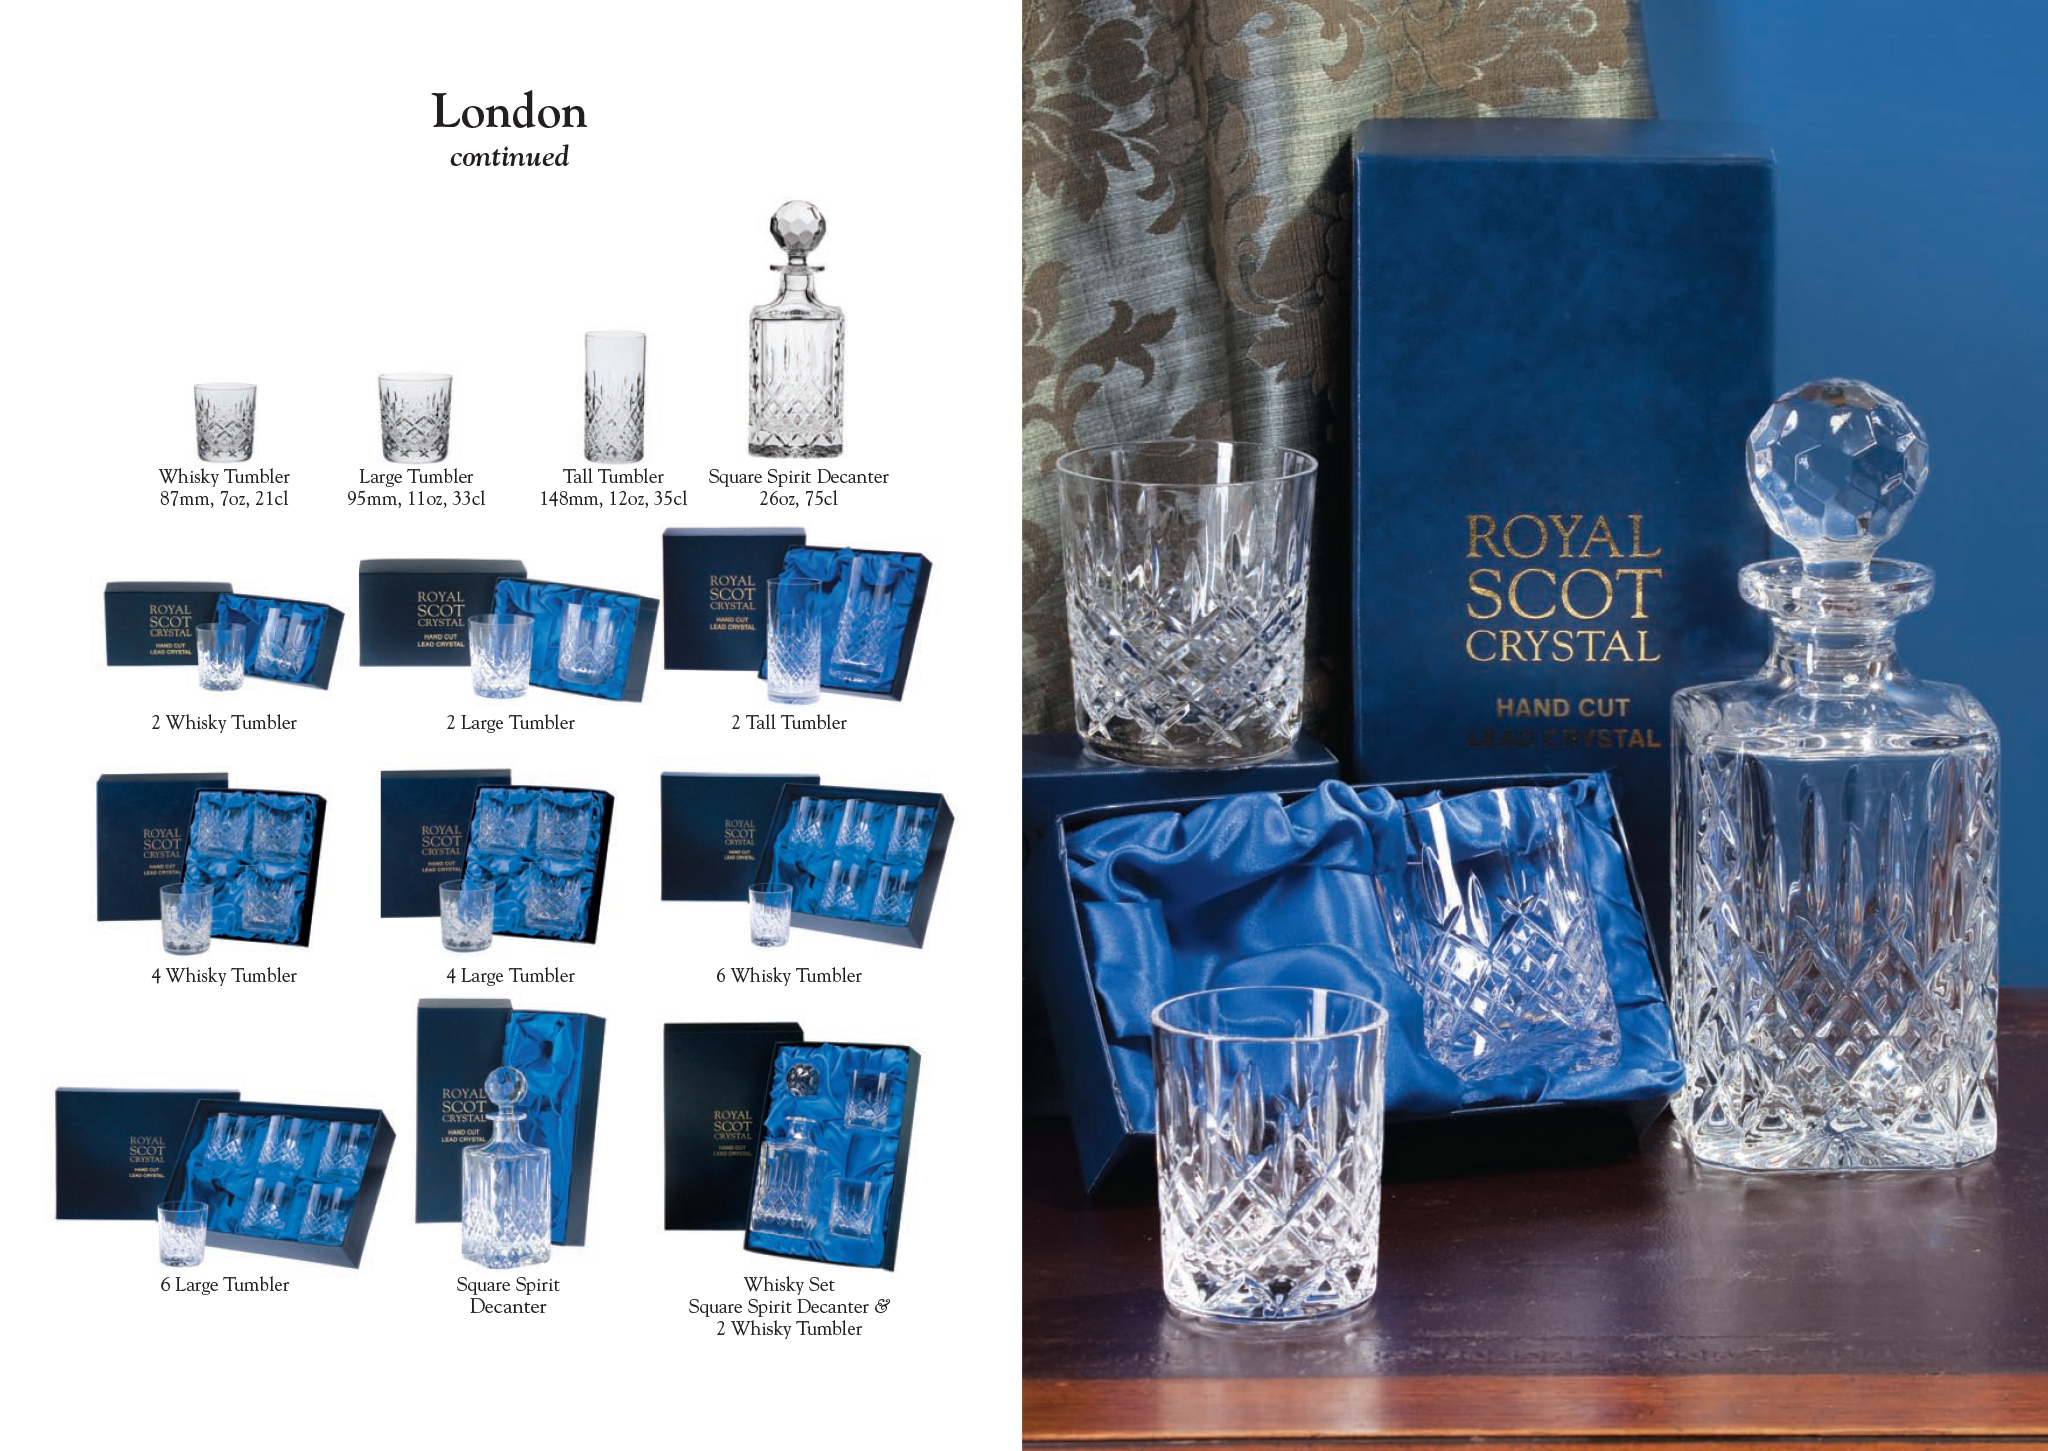 Royal Scot Crystal - London